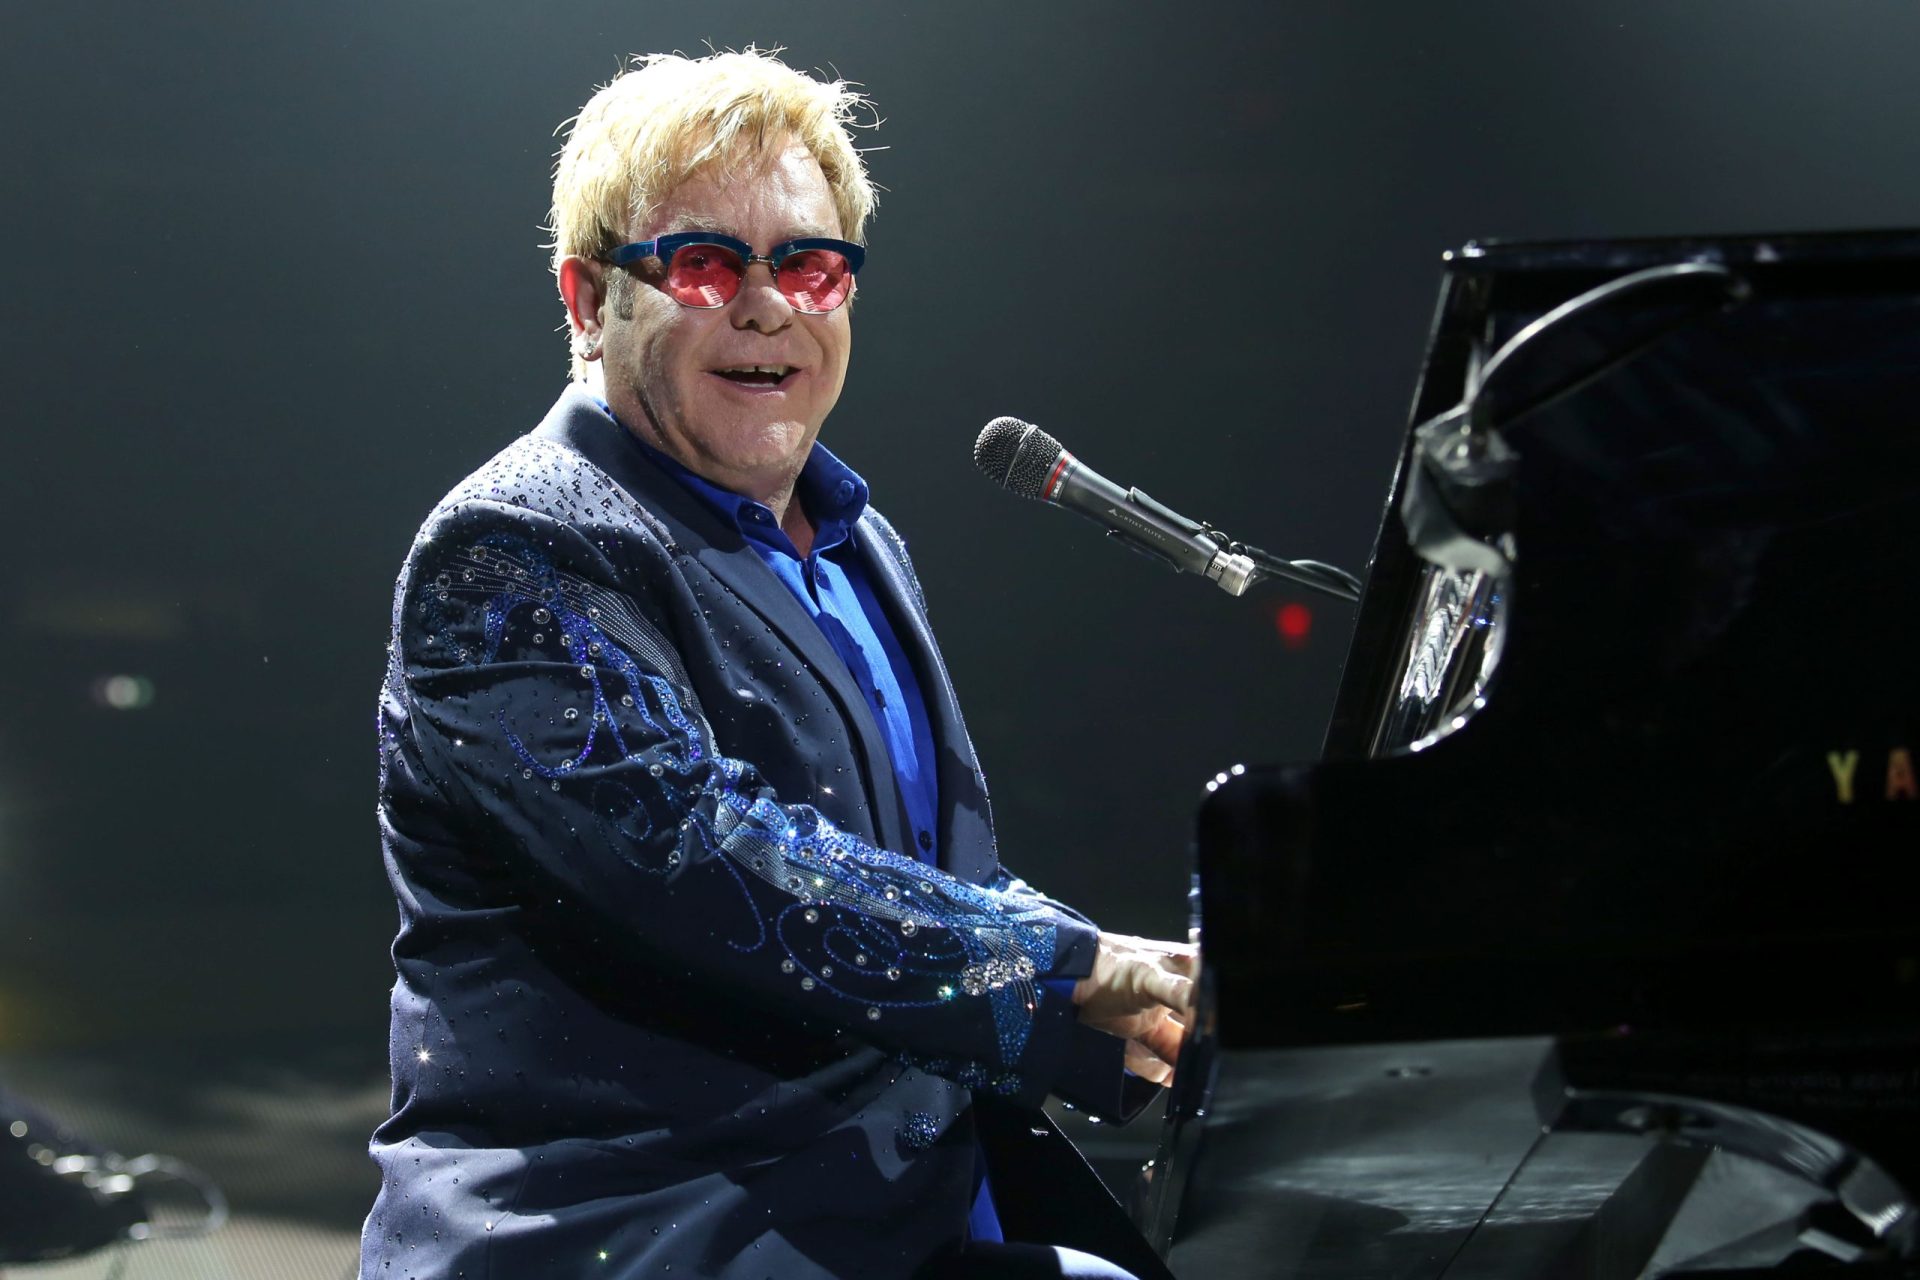 Adolescente confessa ter planeado atentado em concerto de Elton John